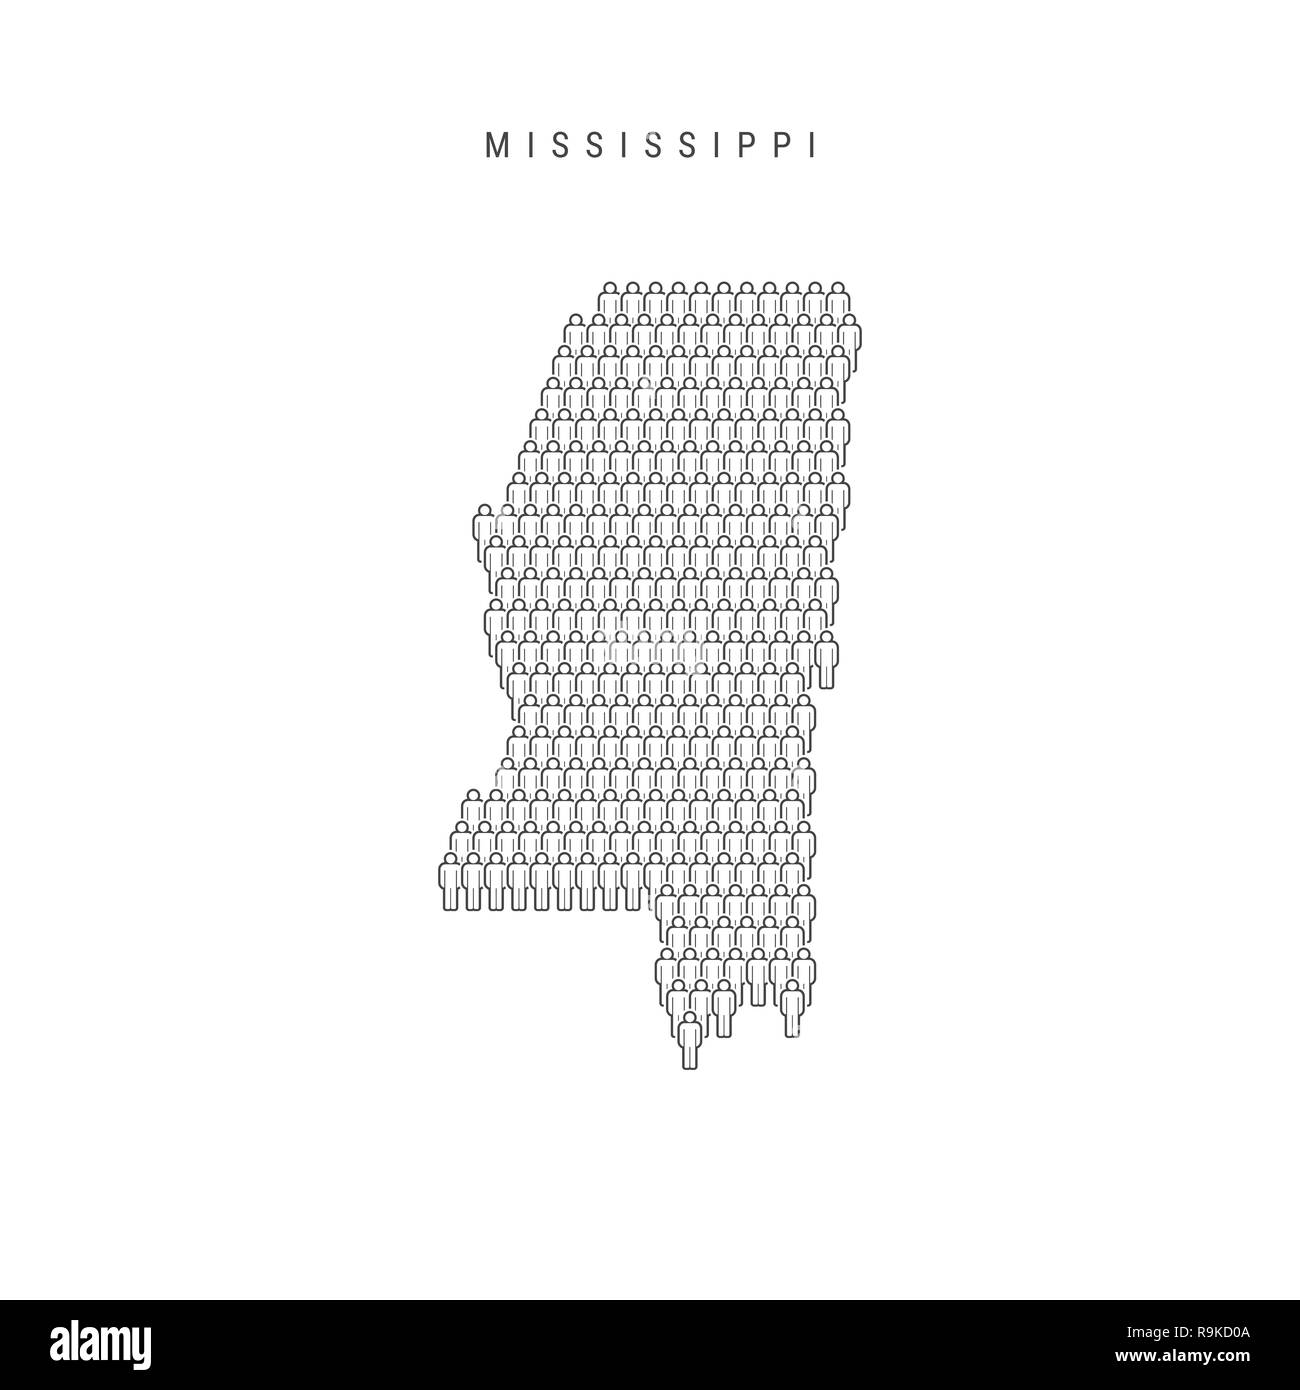 Leute Karte von Mississippi, US-Staat. Stilisierte Silhouette, Leute in der Form einer Karte von Mississippi. Mississippi Bevölkerung. Abbildung: Isol Stockfoto